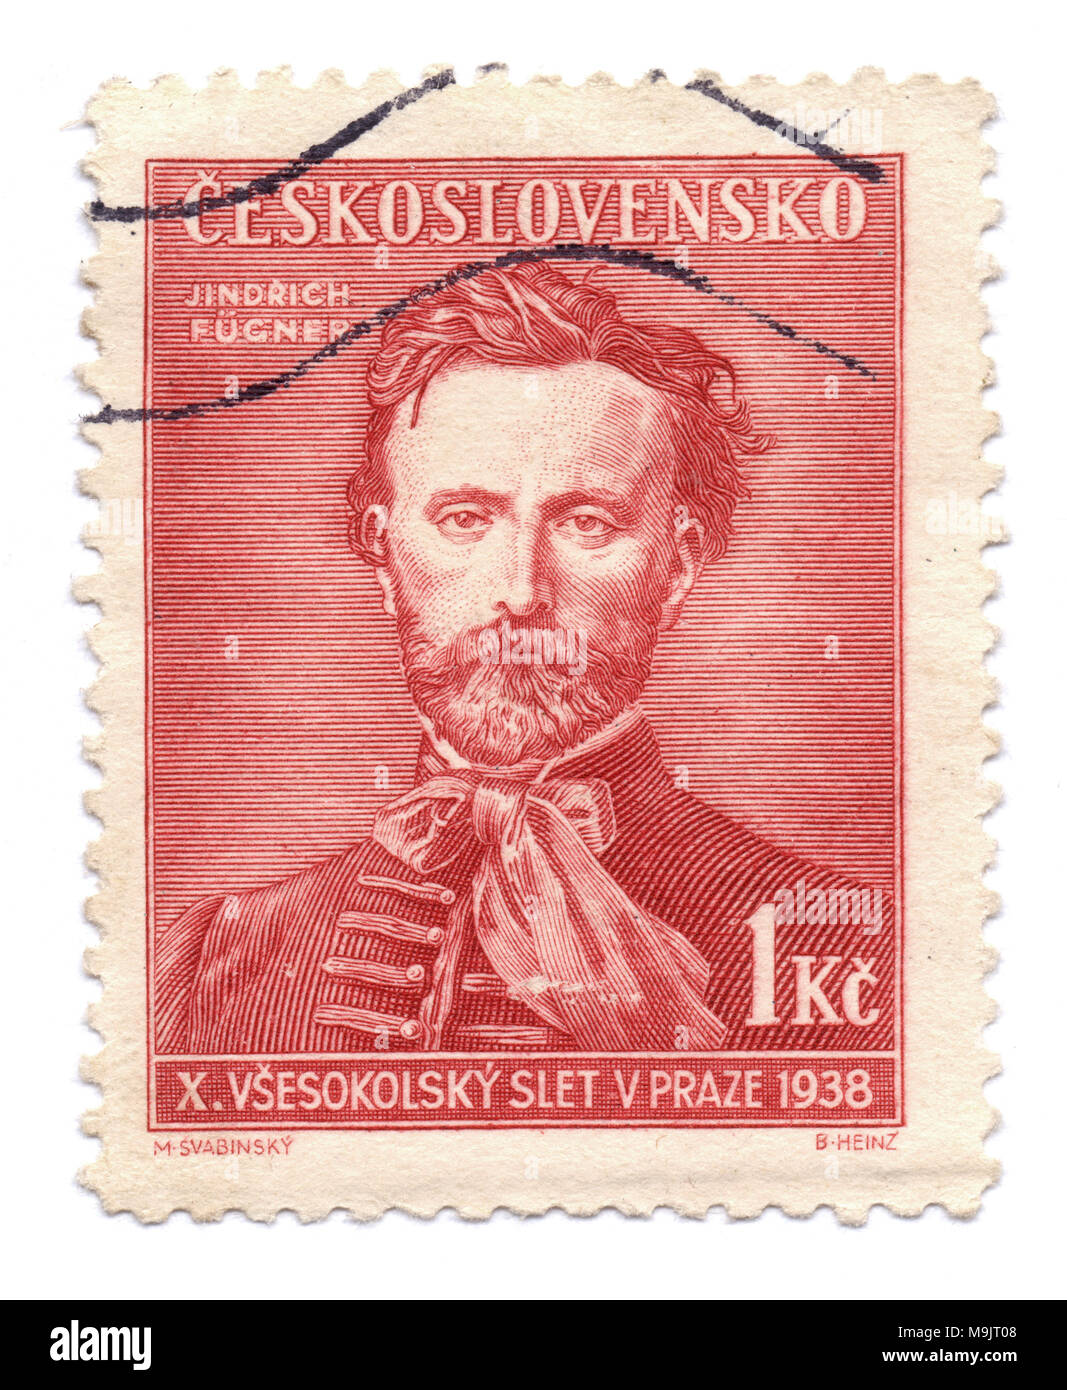 Jindrich Fügner, co-fondatore del movimento Sokol, sul francobollo, stampato in Praga, Cecoslovacchia (ora Repubblica Ceca) nel 1938 circa Foto Stock